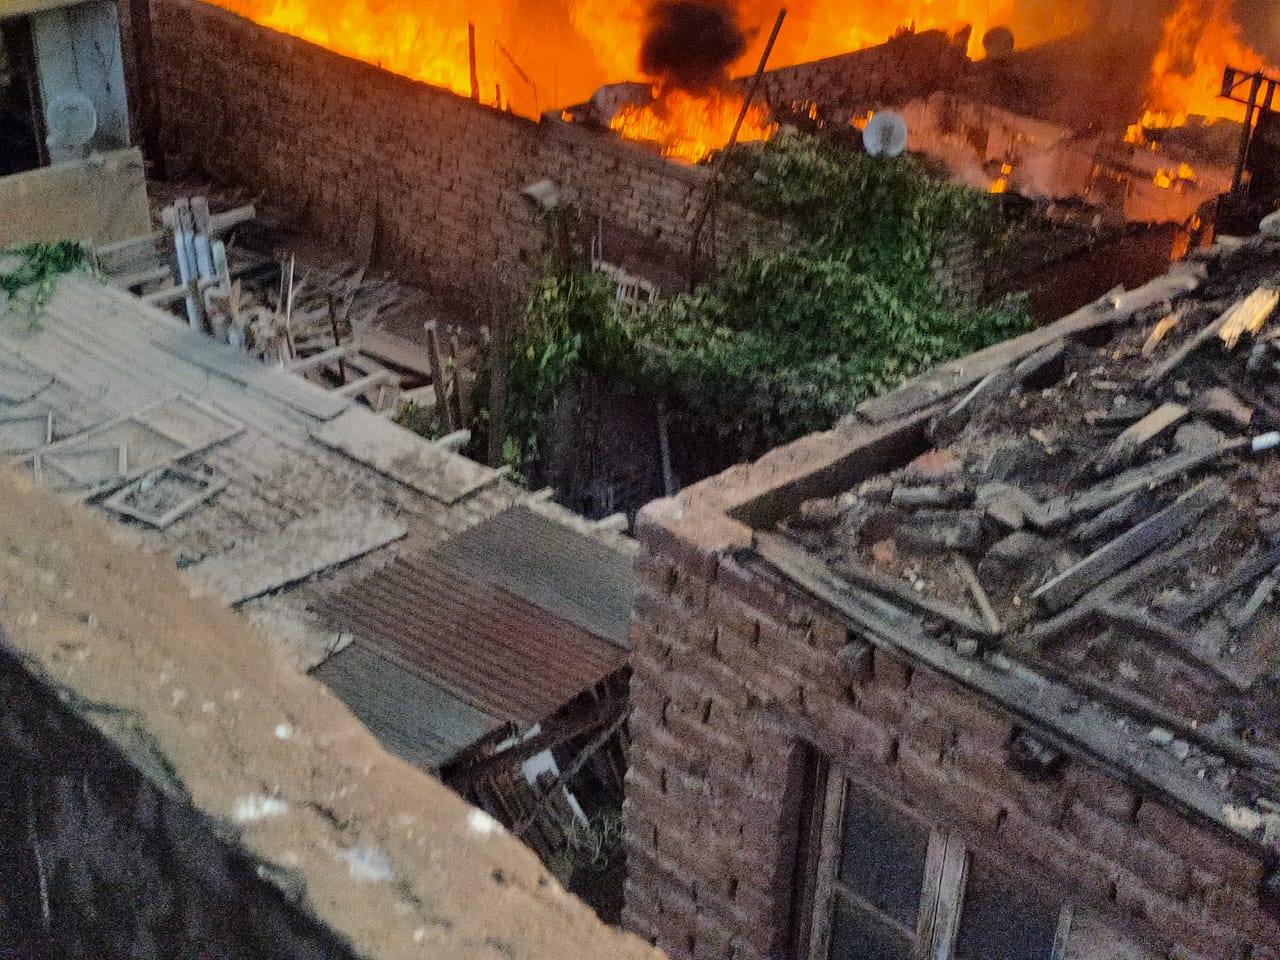 شاهد عيان حريق مخيف بحي بالشرابية بالقاهرة لم تقع إصابات